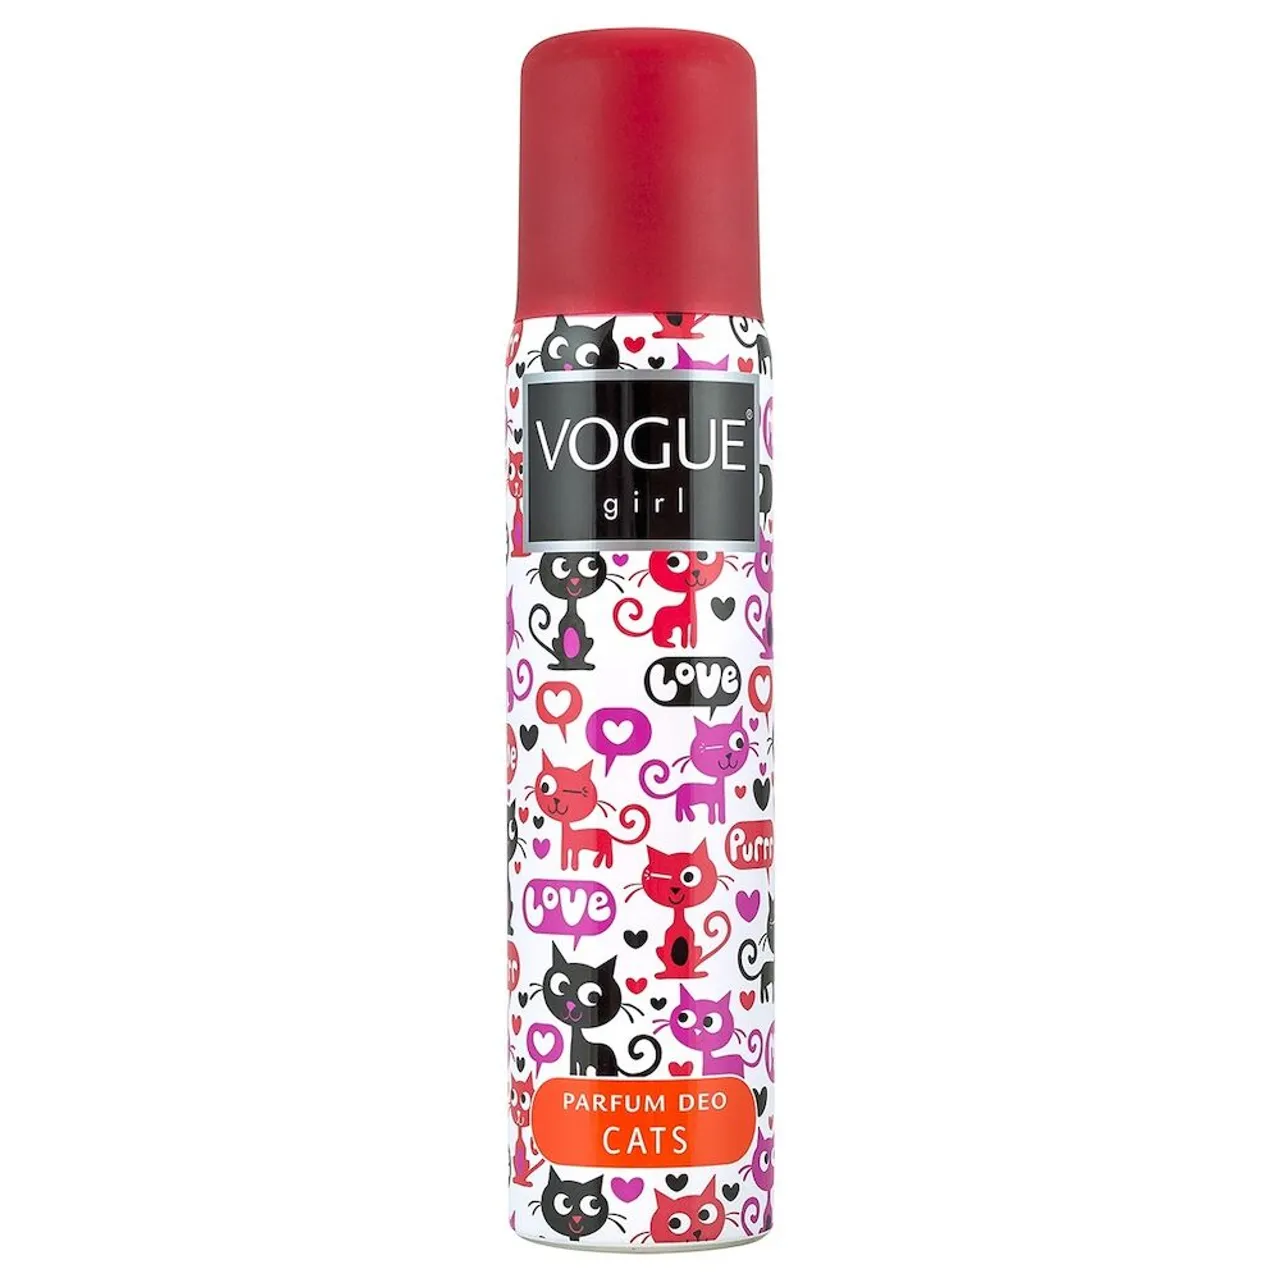 Vogue Girl Cats Parfum Deo Spray